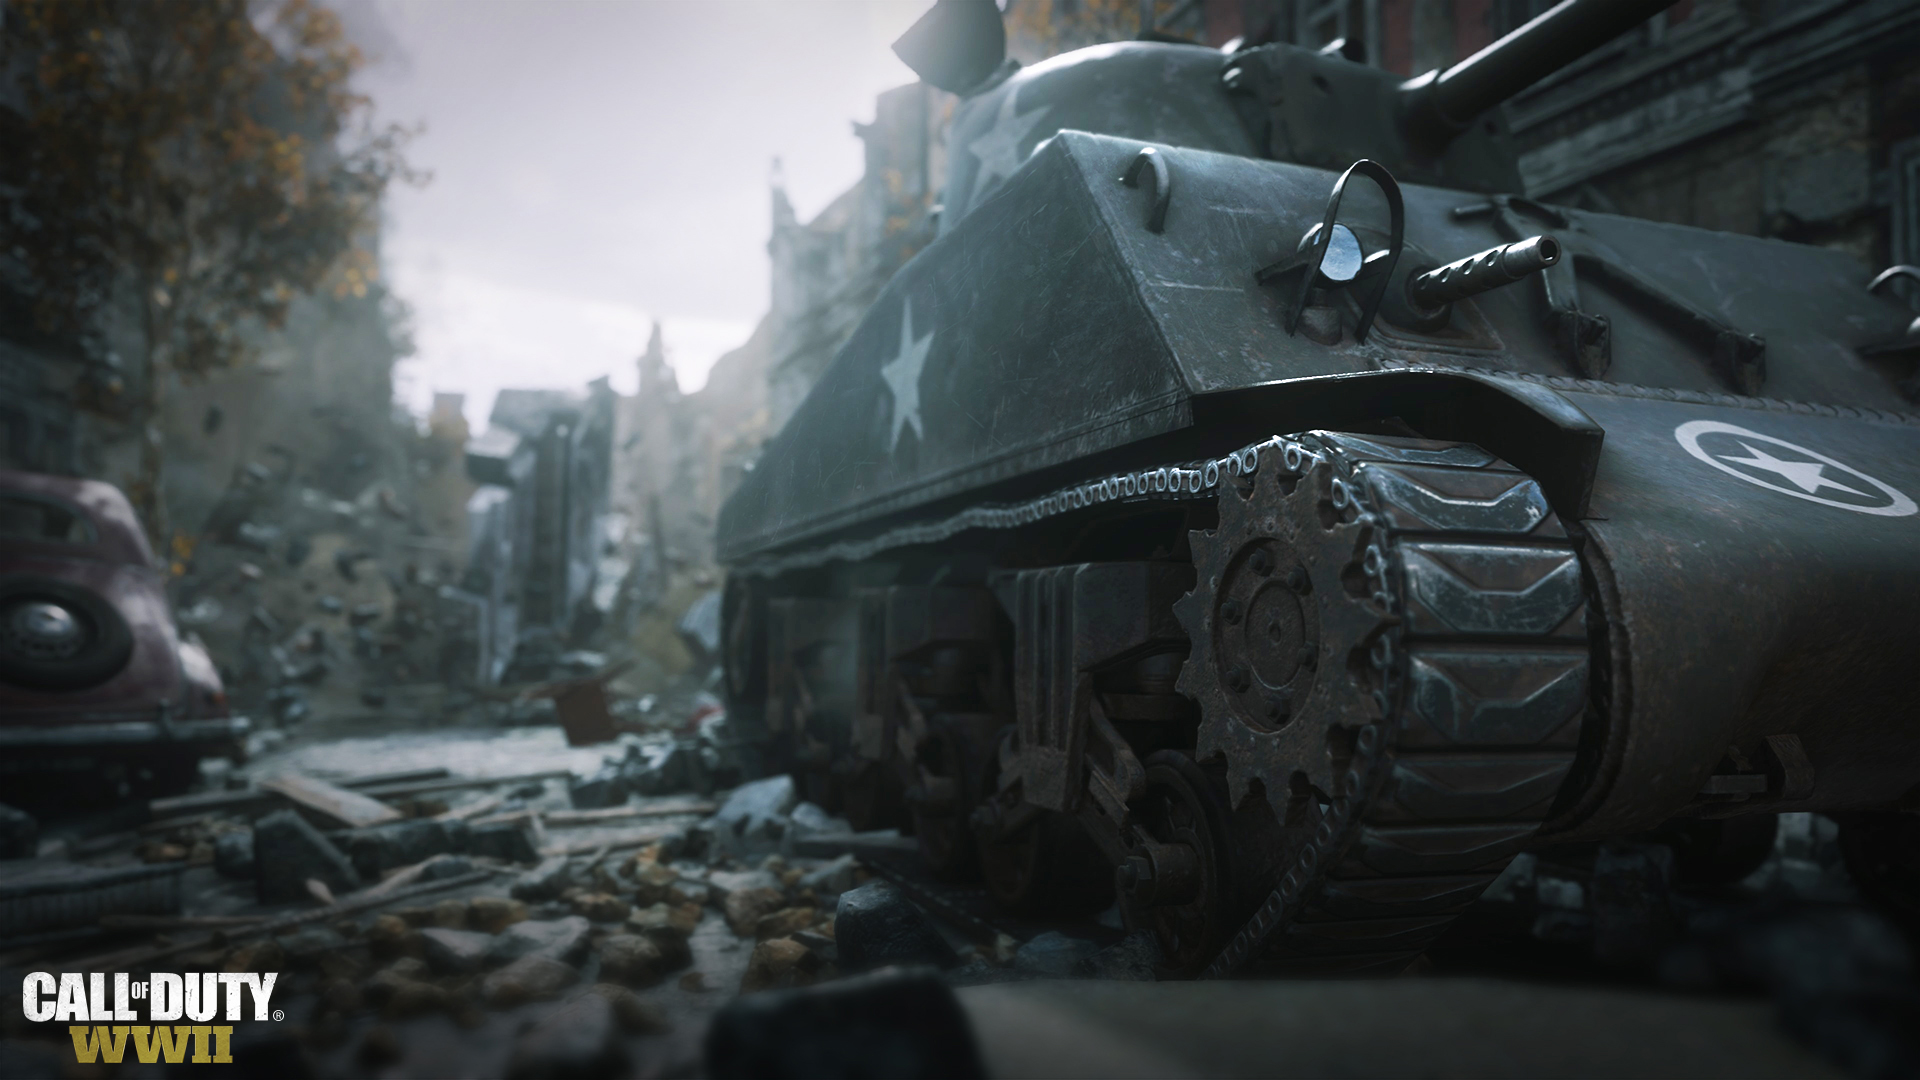 Campanha de Call of Duty: WWII terá 6h de duração, em média